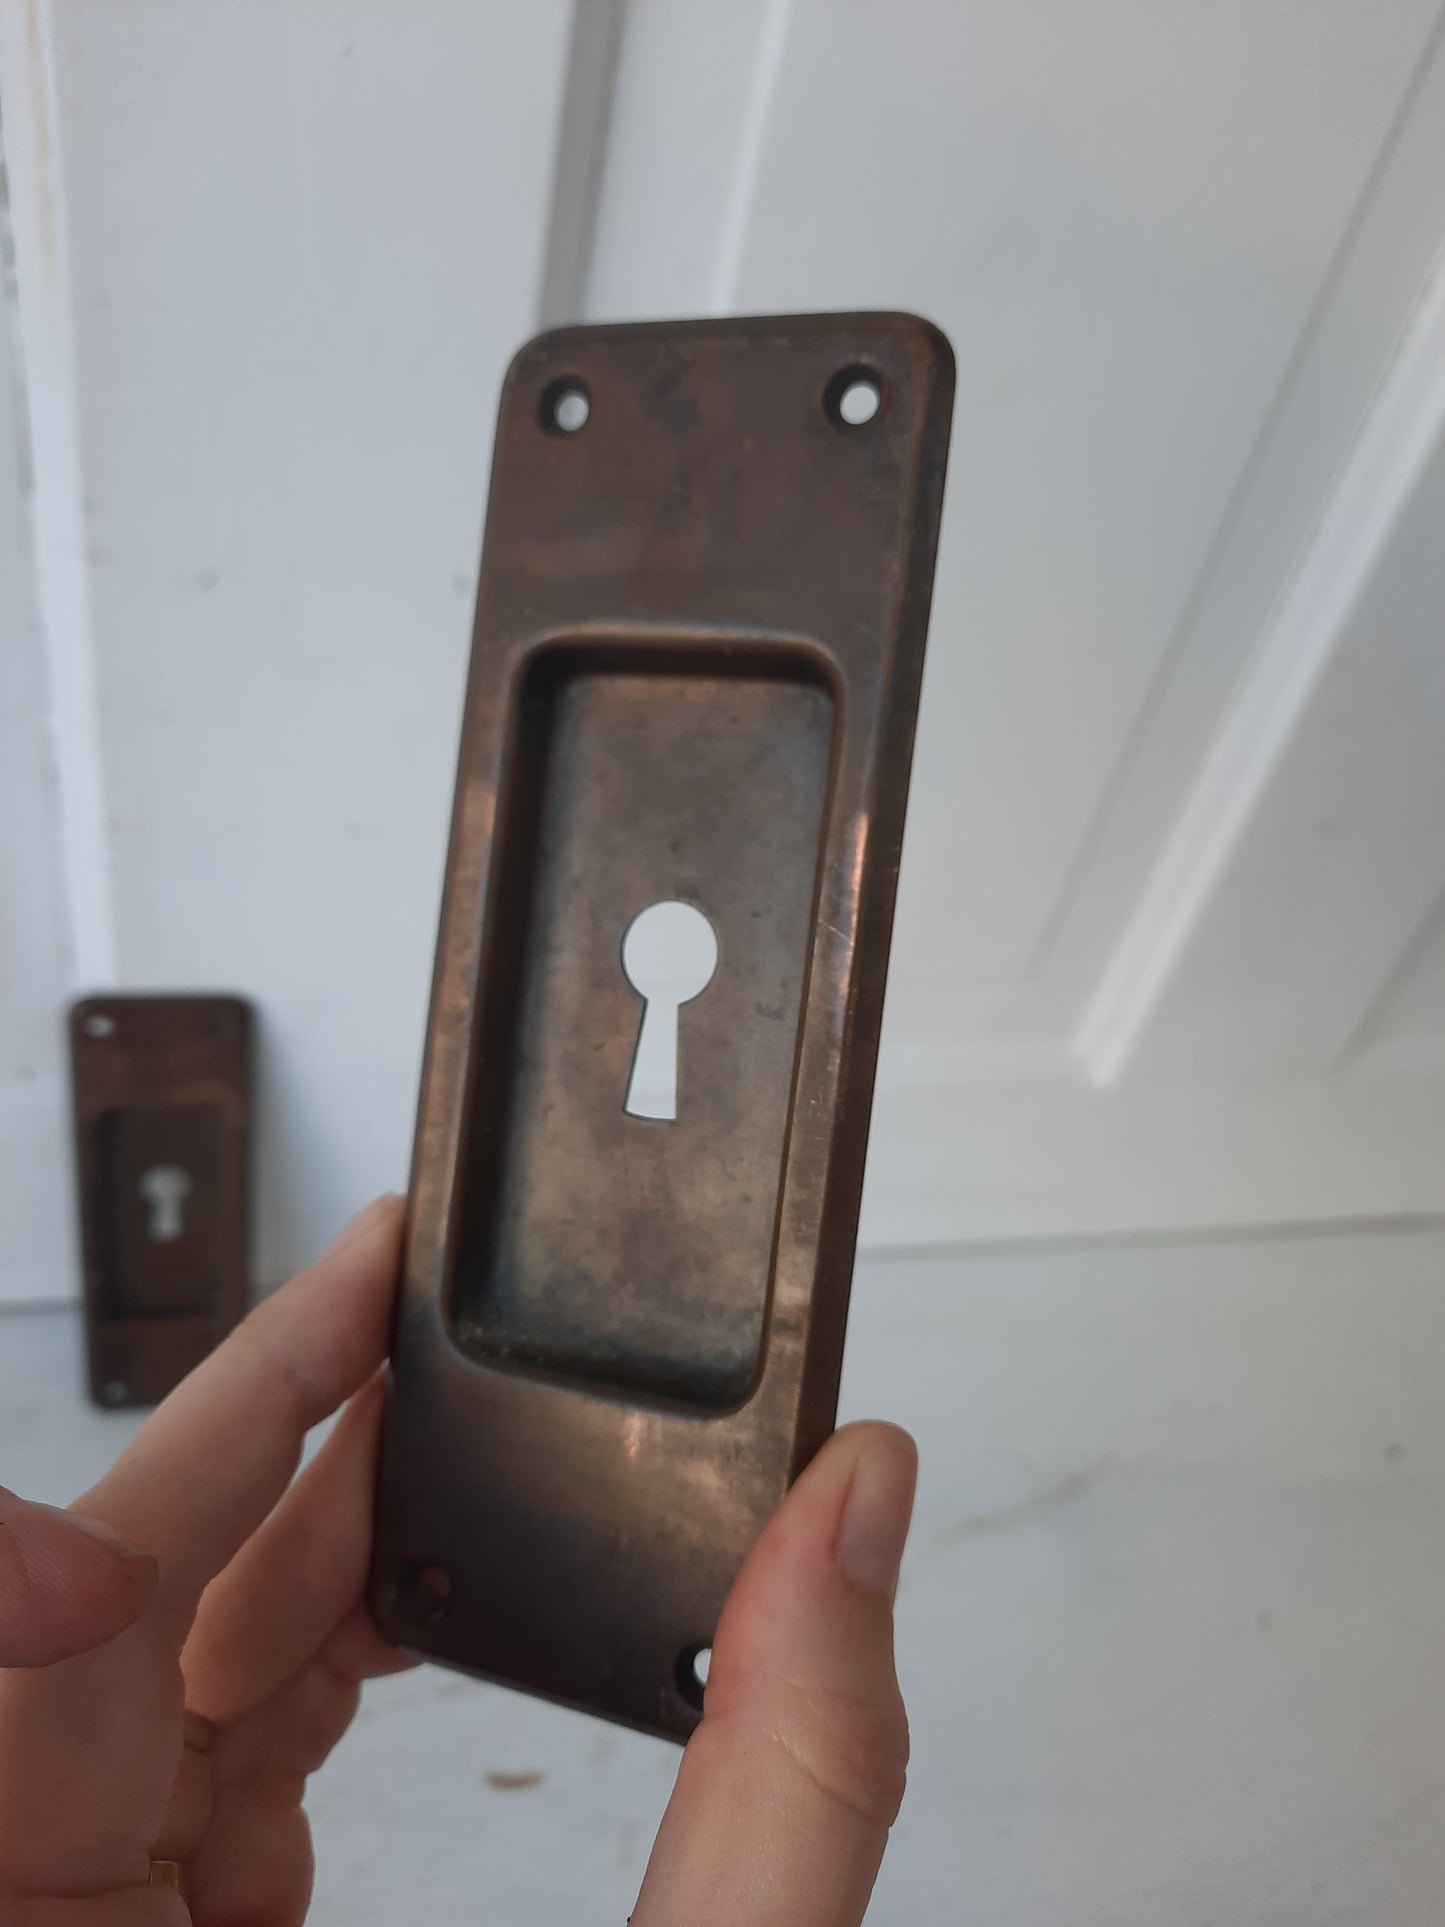 Pair of Stamped Brass Pocket Door Pulls, Handles for Rolling or Antique Pocket Door